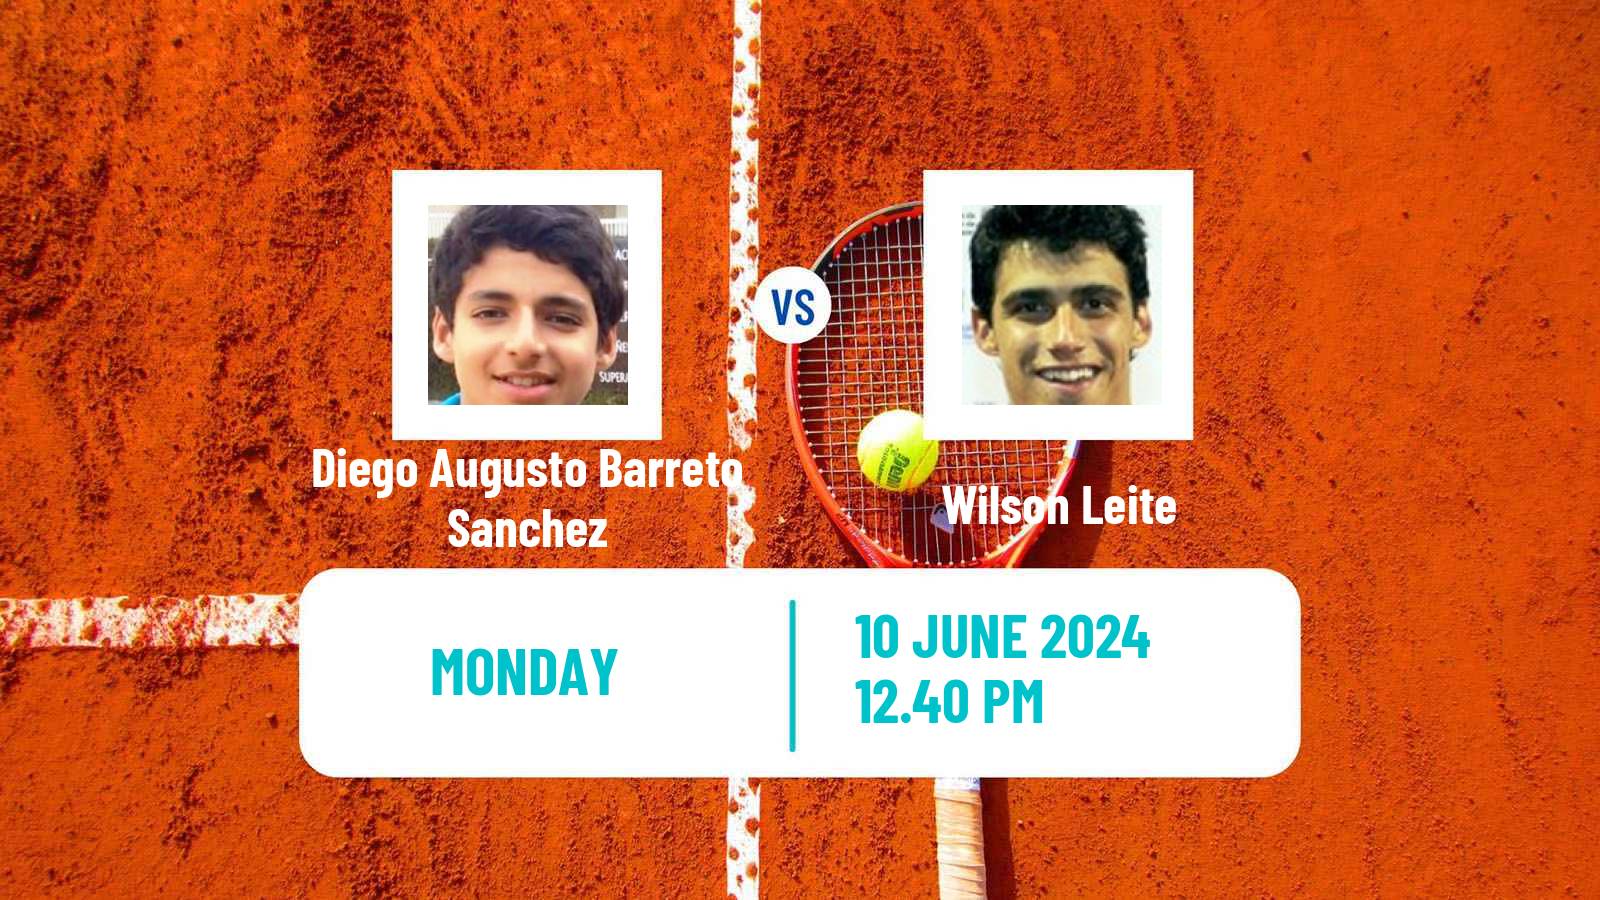 Tennis Lima Challenger Men Diego Augusto Barreto Sanchez - Wilson Leite